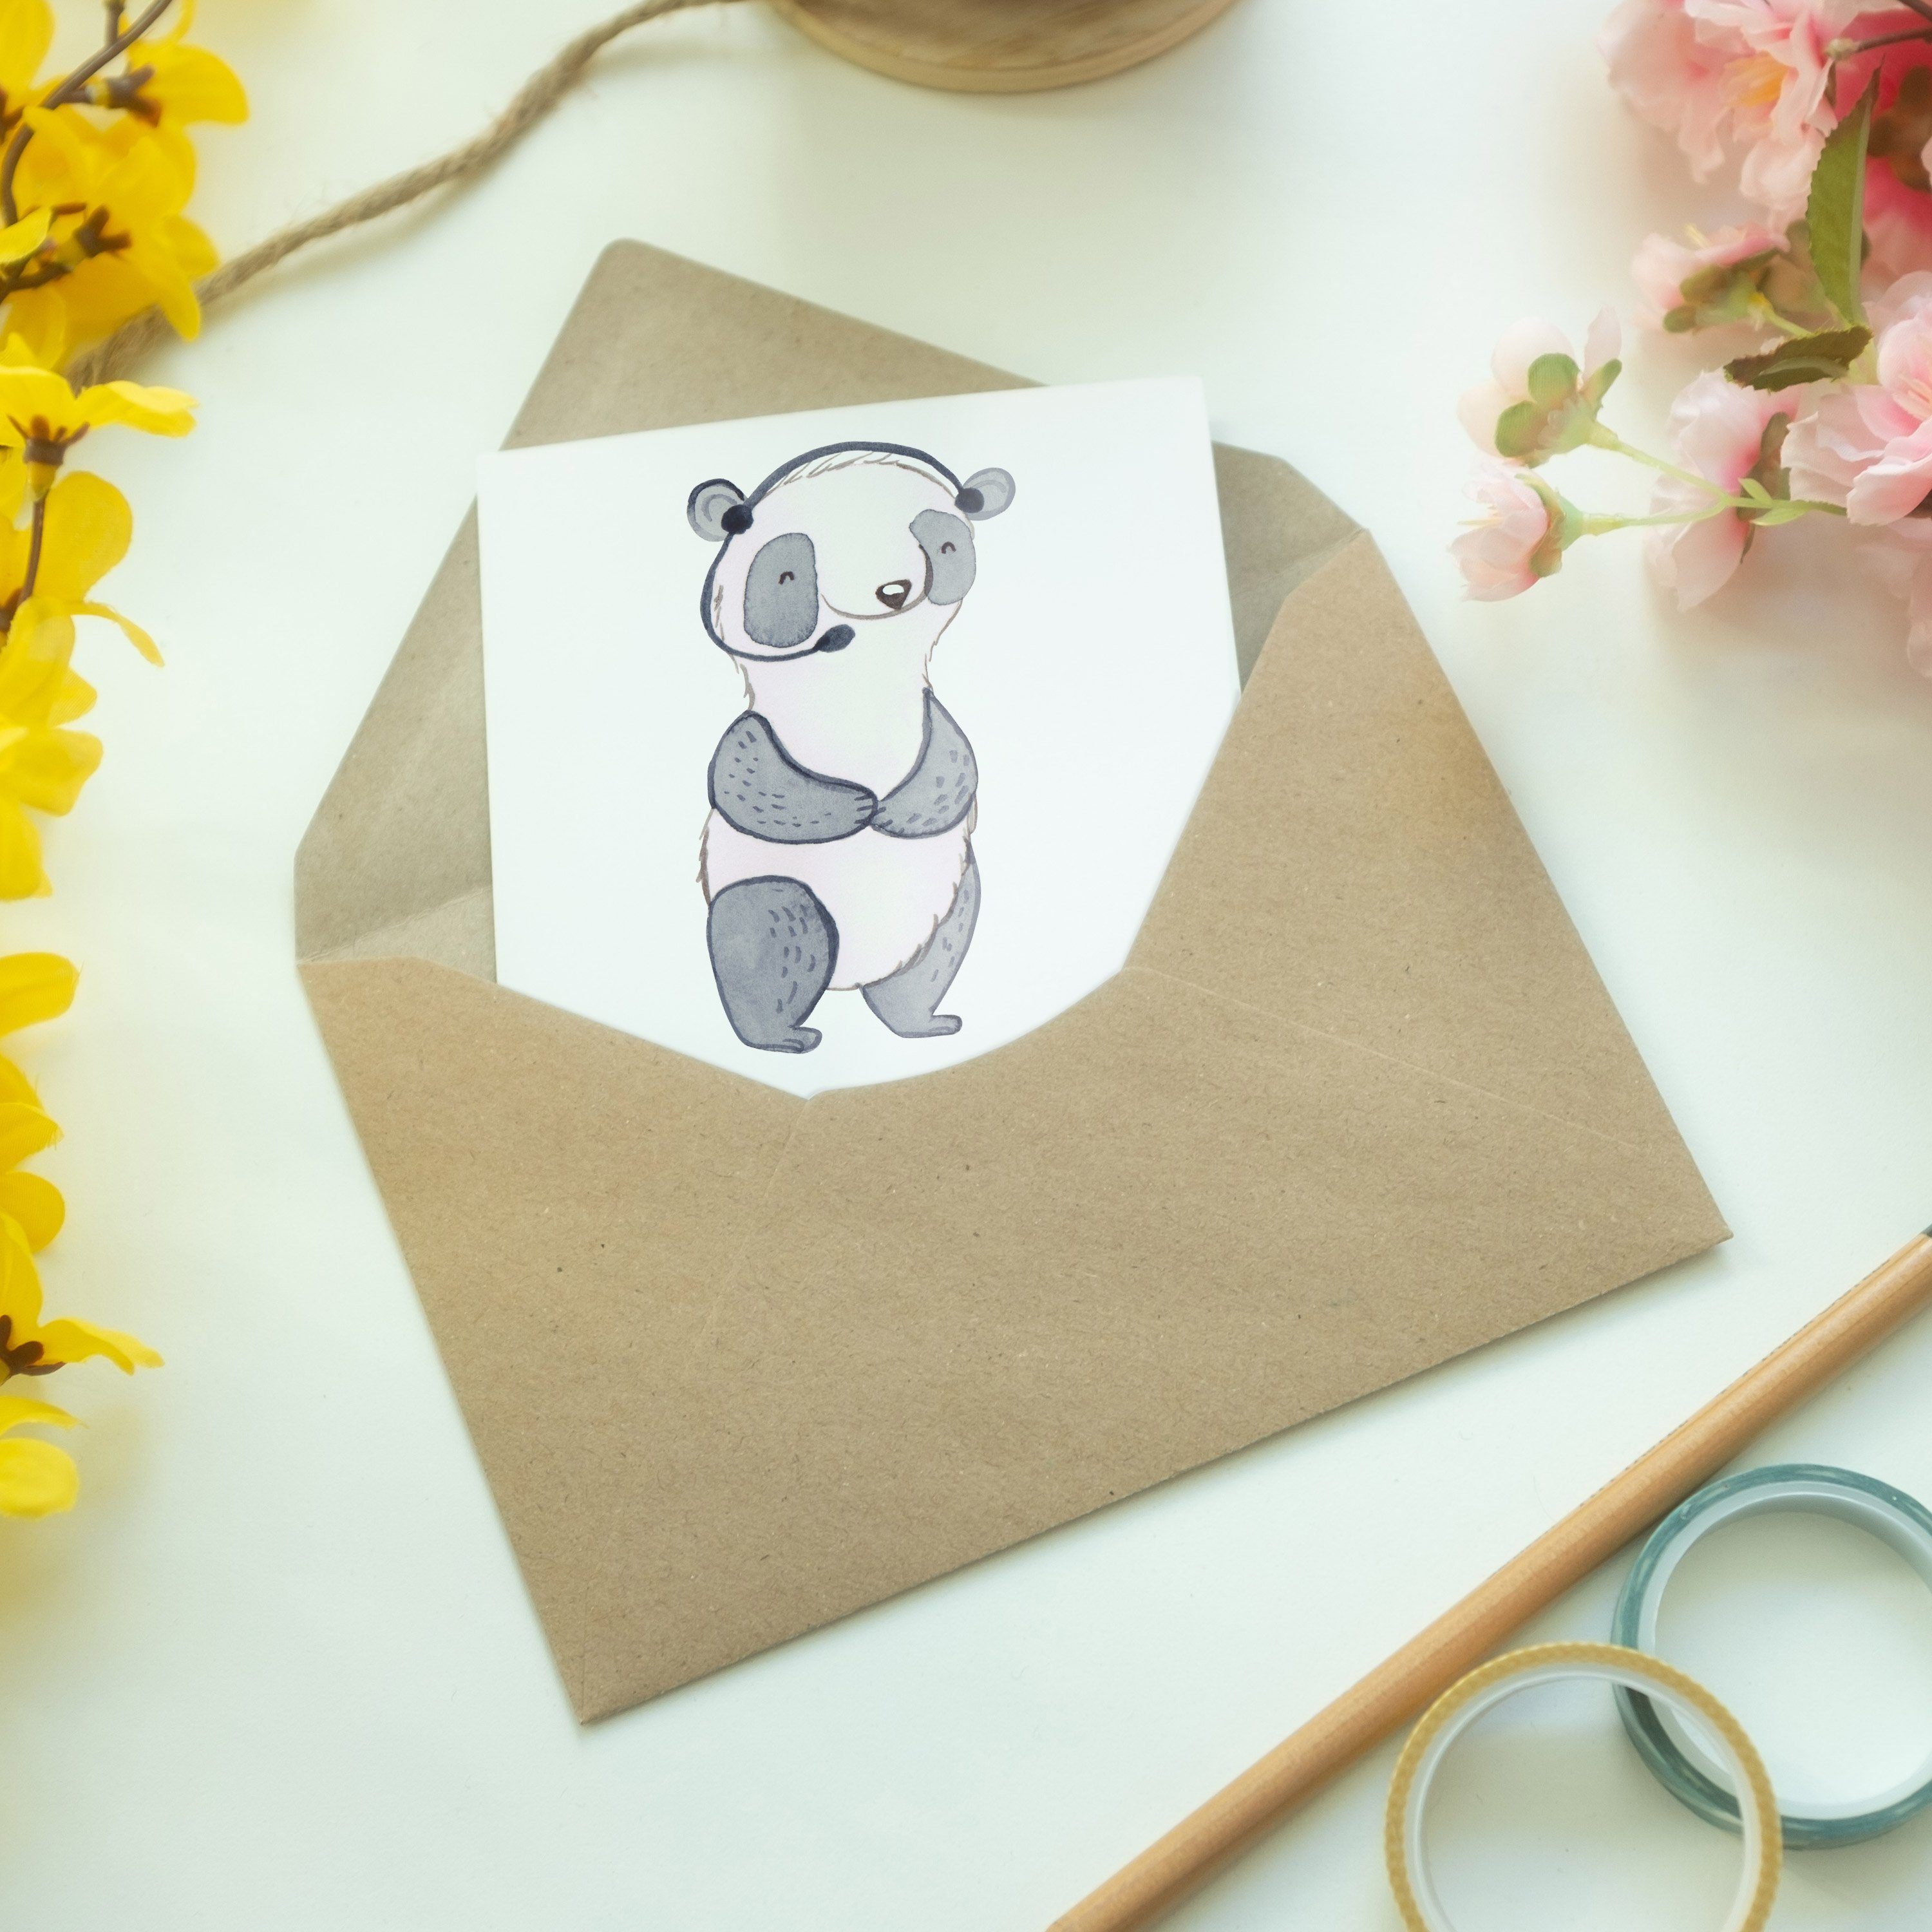 Mr. & Mrs. Panda Grußkarte Weiß - mit Danke, Hochzeitsk Geschenk, Kundendienstmitarbeiter - Herz